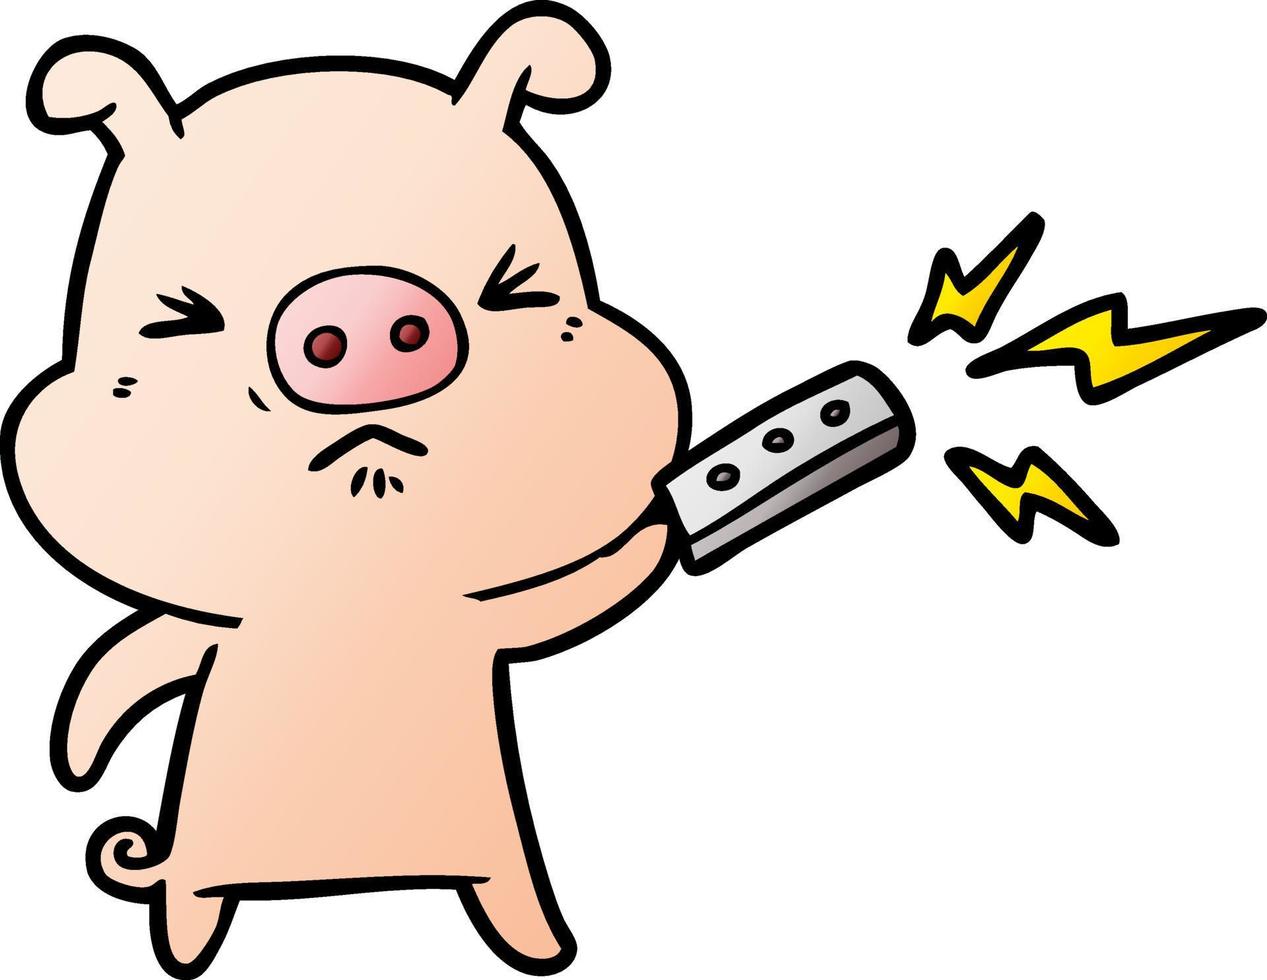 cartoon grumpy pig with remote control vector